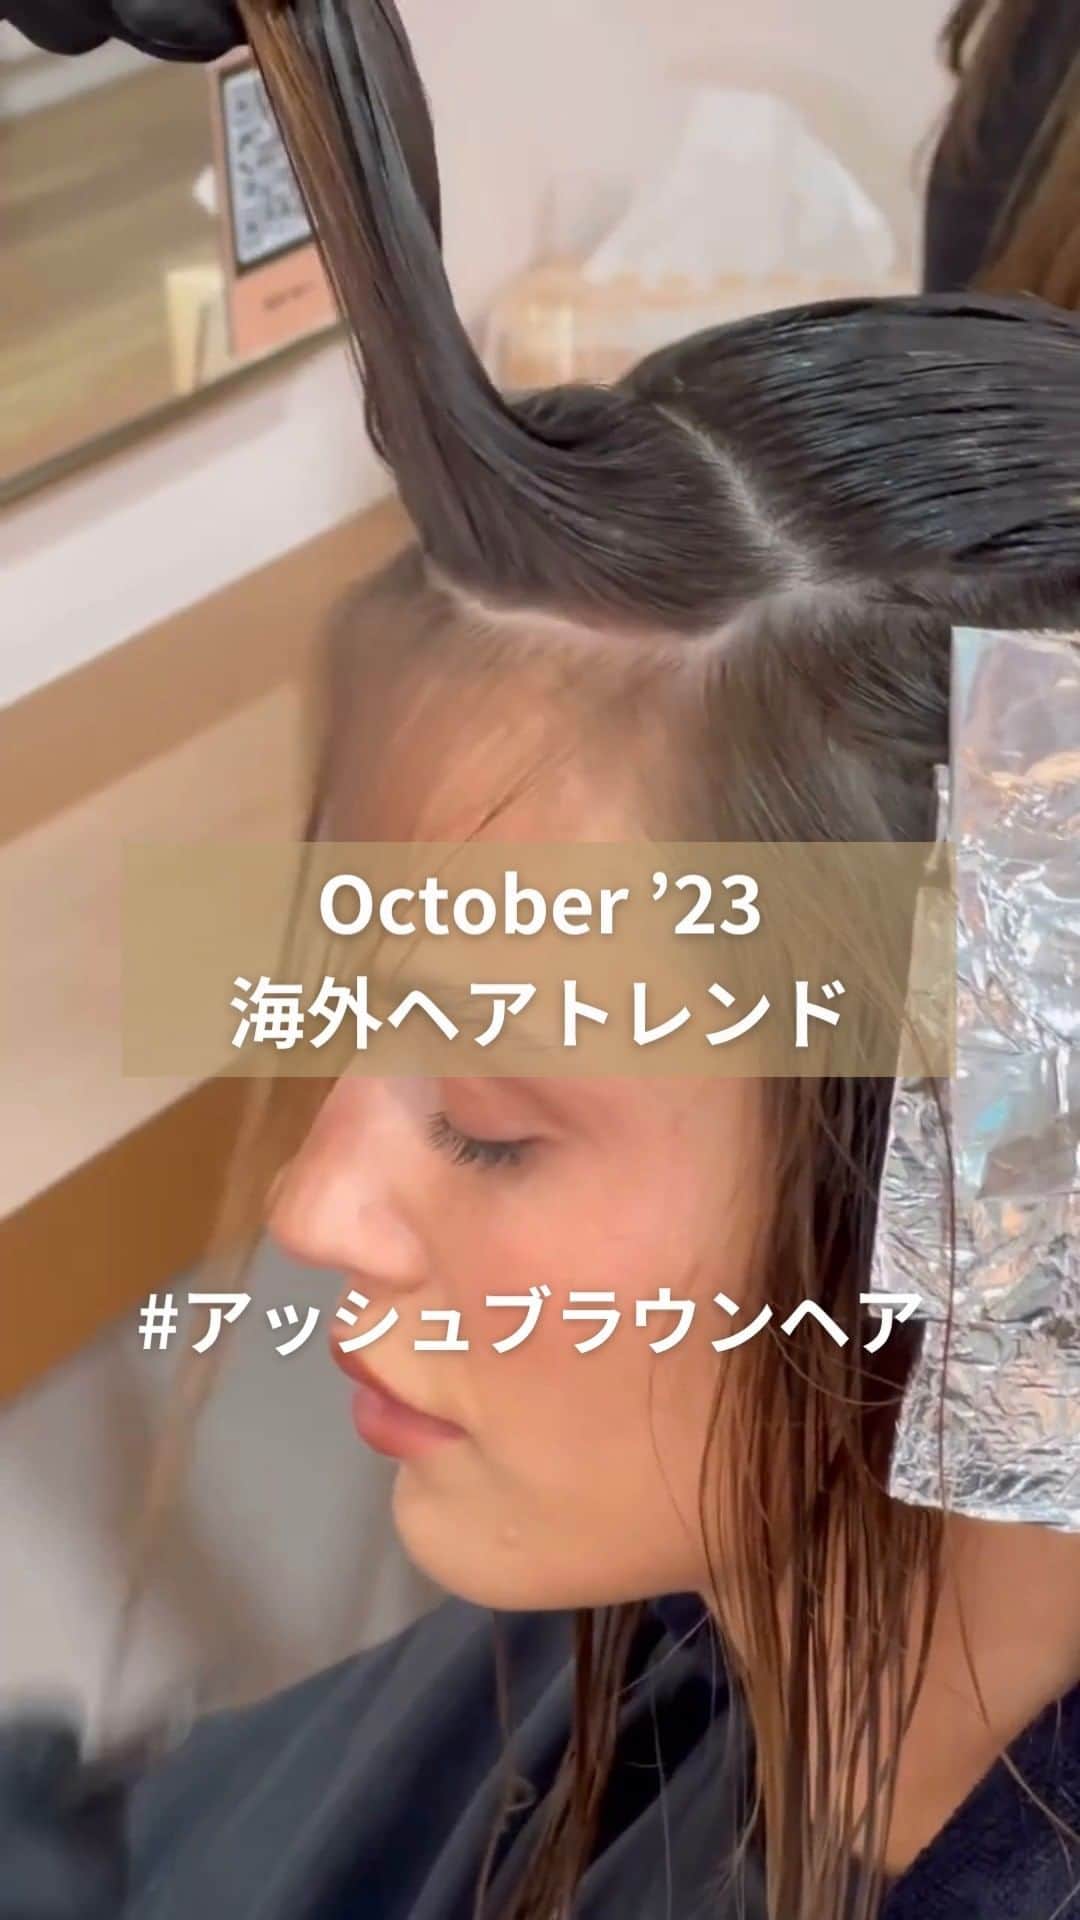 Wella Professionals Japanのインスタグラム：「【ヘアカラートレンド】 艶ツヤなブラウンカラーで秋を満喫しませんか？ 落ち着いた色合いがモデルさんにもマッチしていますね👍 #アッシュブラウンヘア   Created🎨 by @moniquemcmahoncolour さん  ✅ブラウンカラーご希望のお客様の参考イメージとしてぜひ保存してください！  #AshBrownHair  #ウエラ #Wella #ウエラプロフェッショナル #ヘアスタイリング #ヘアカラー #コレストン #コレストンパーフェクト #コレストンパーフェクトプラス #イルミナ #イルミナカラー #システムプロフェッショナル #美容師 #海外ヘア #海外トレンド #トレンドヘアカラー」